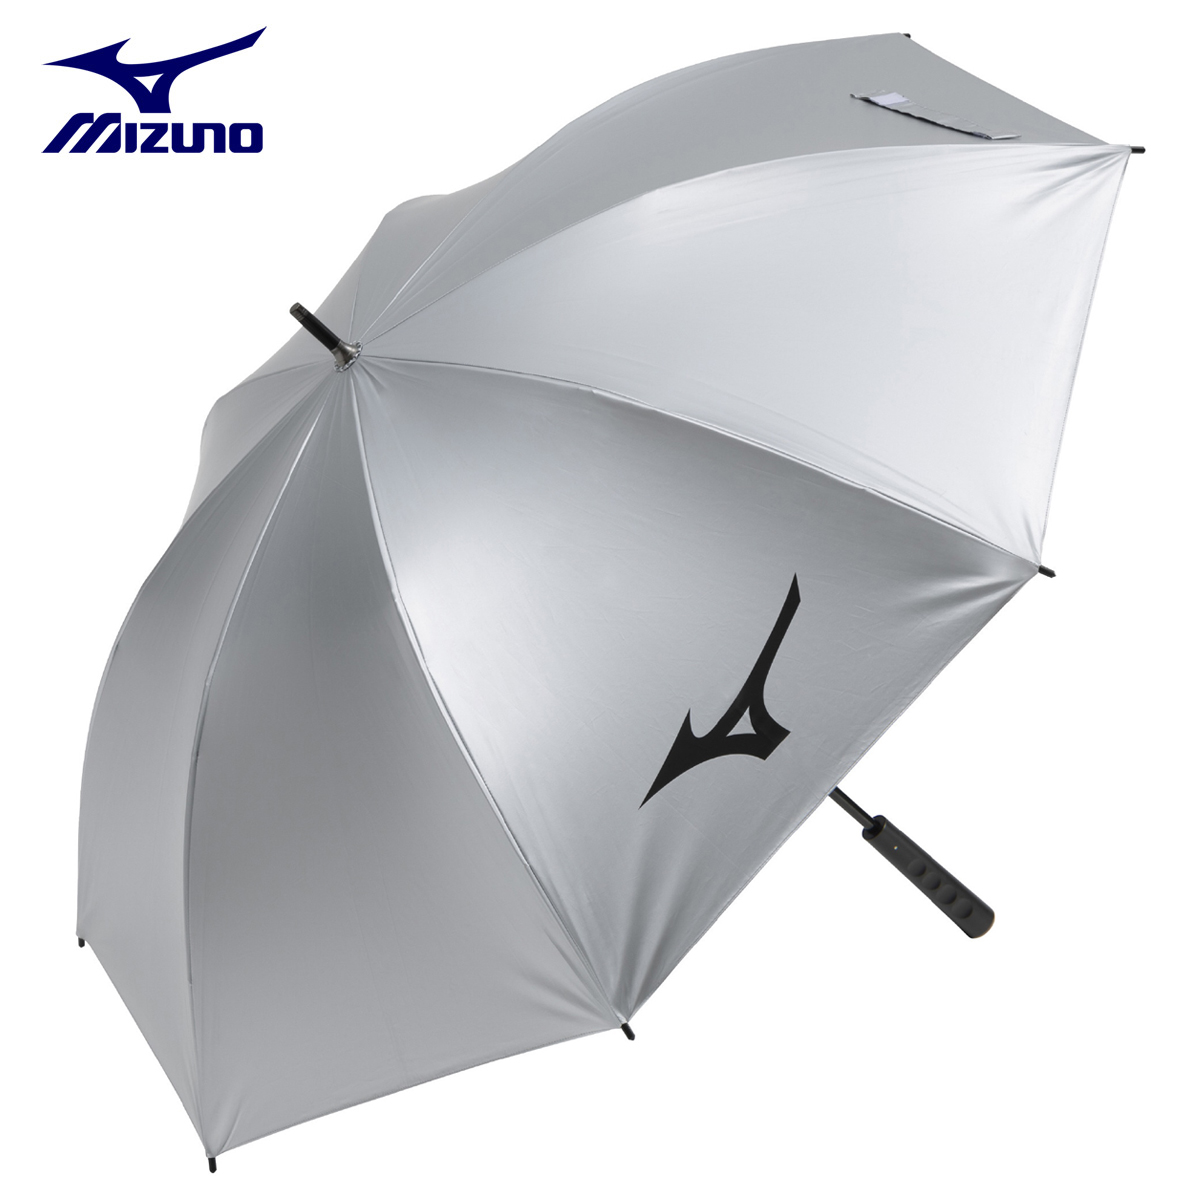 MIZUNO Mizuno стандартный товар все погода umbrella UV cut . дождь двоякое применение серебряный зонт 2023 модель [ 5LJY2322 ]